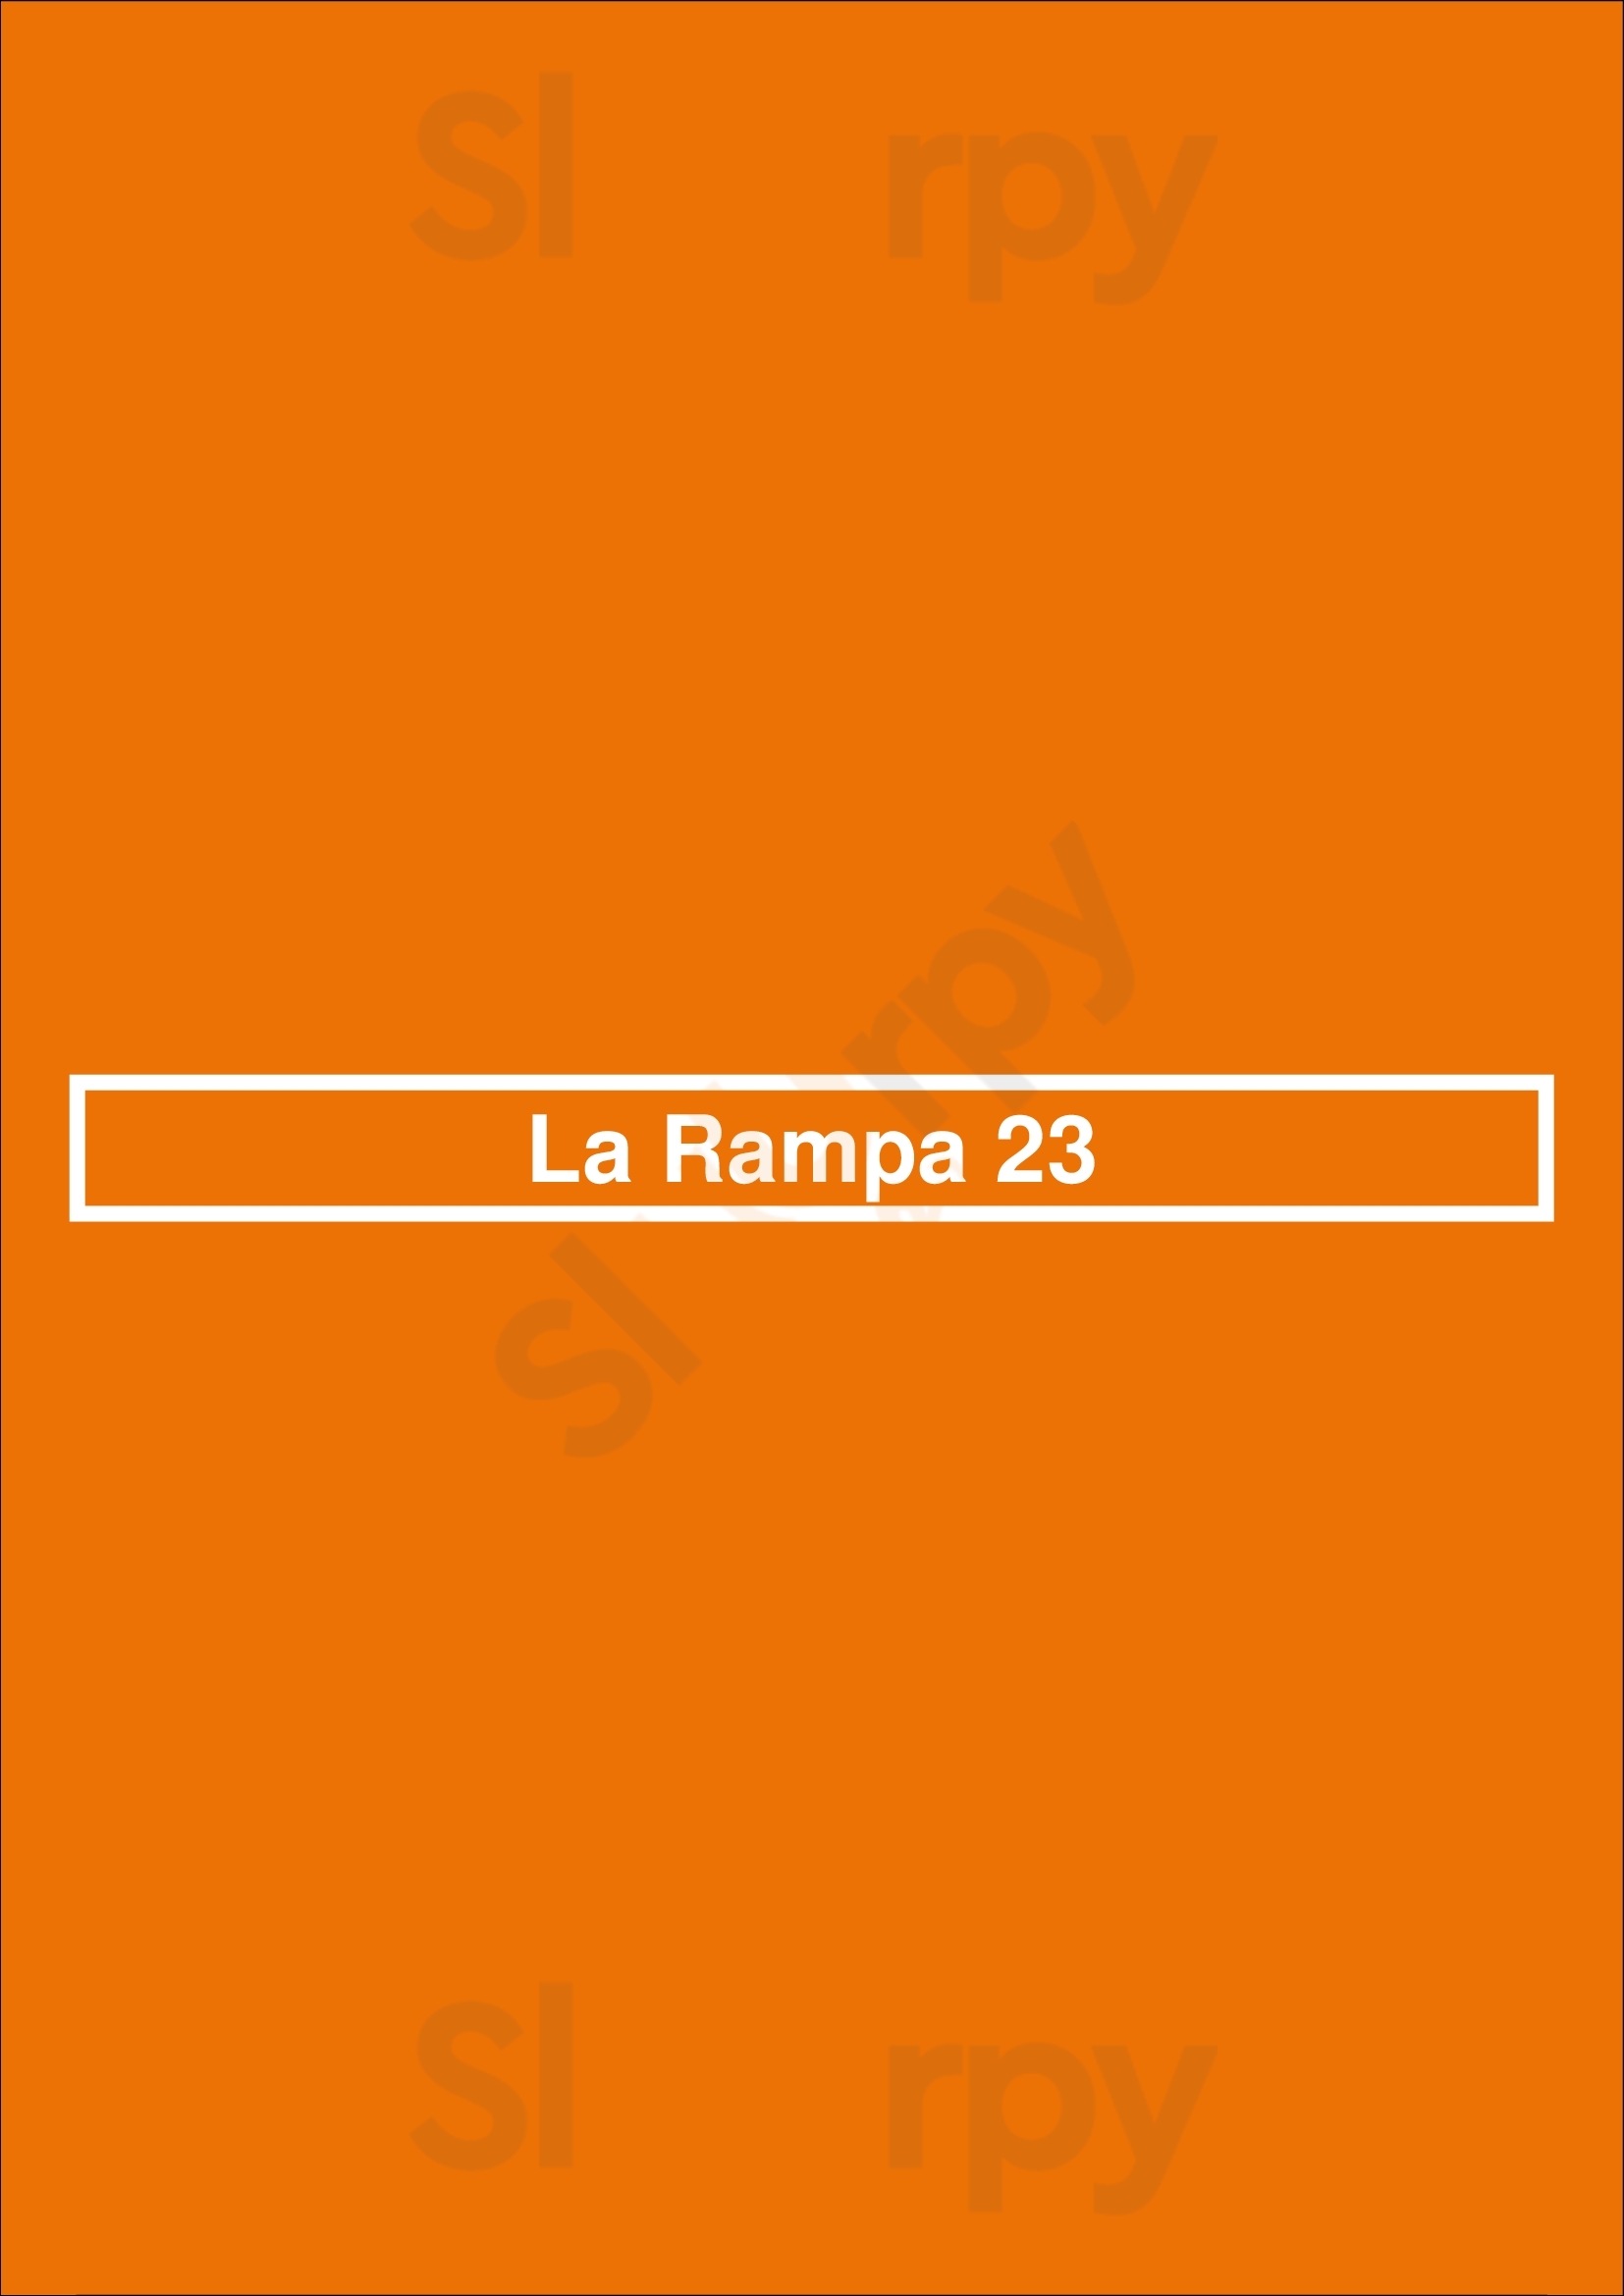 La Rampa 23 Sant Cugat del Vallès Menu - 1